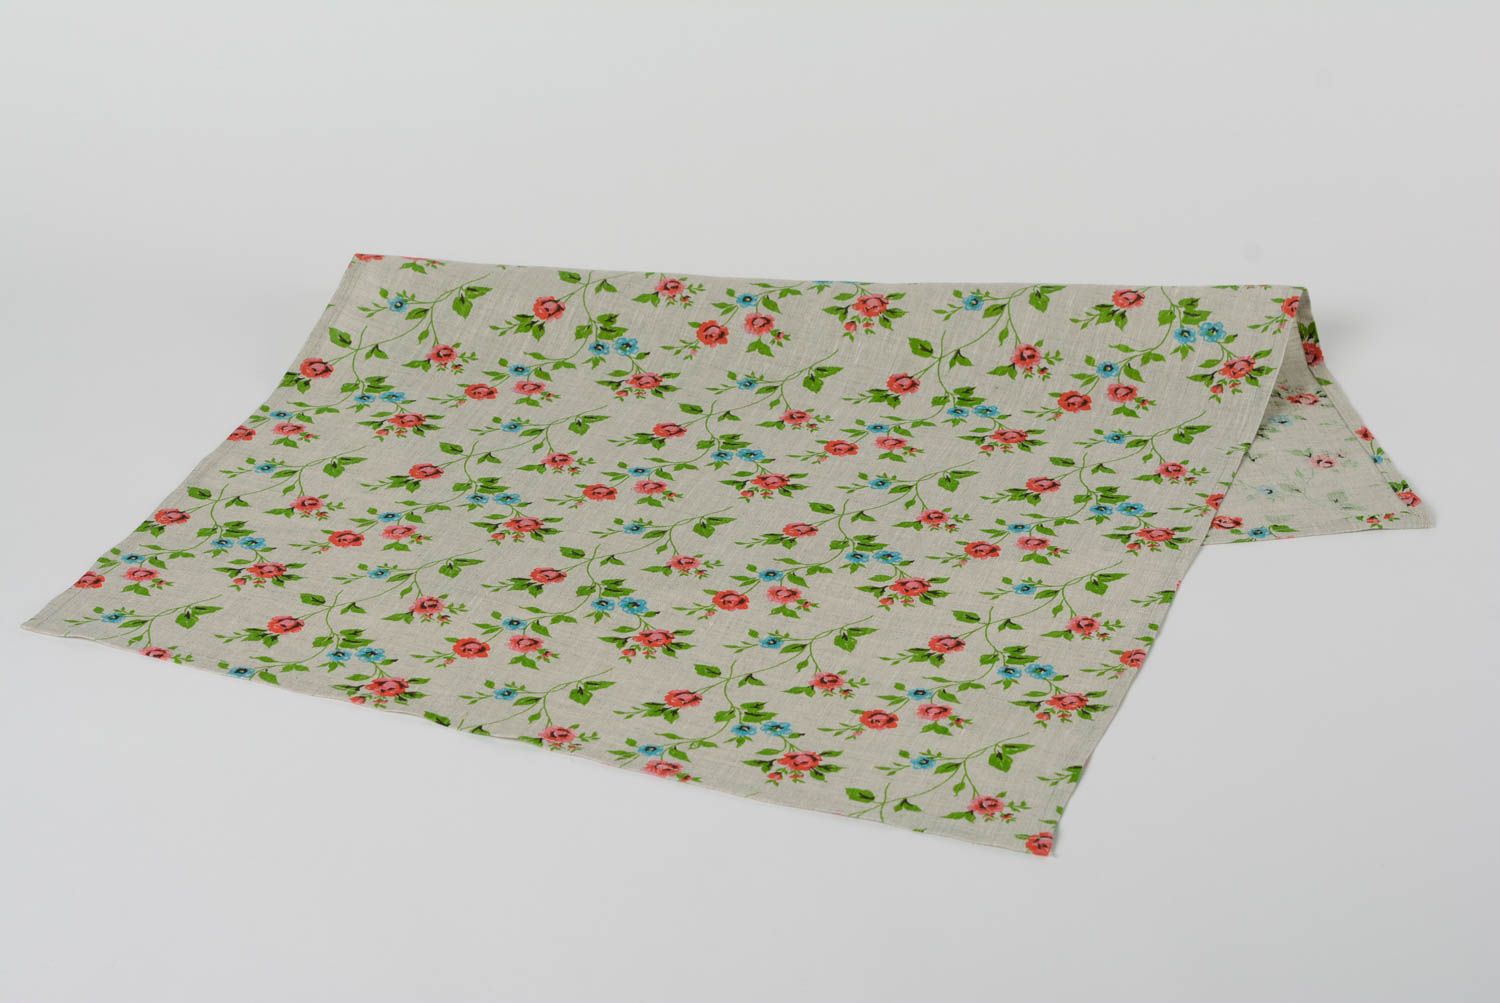 Кухонное полотенце из натуральной ткани ручной работы льняное красивое в цветочек фото 2